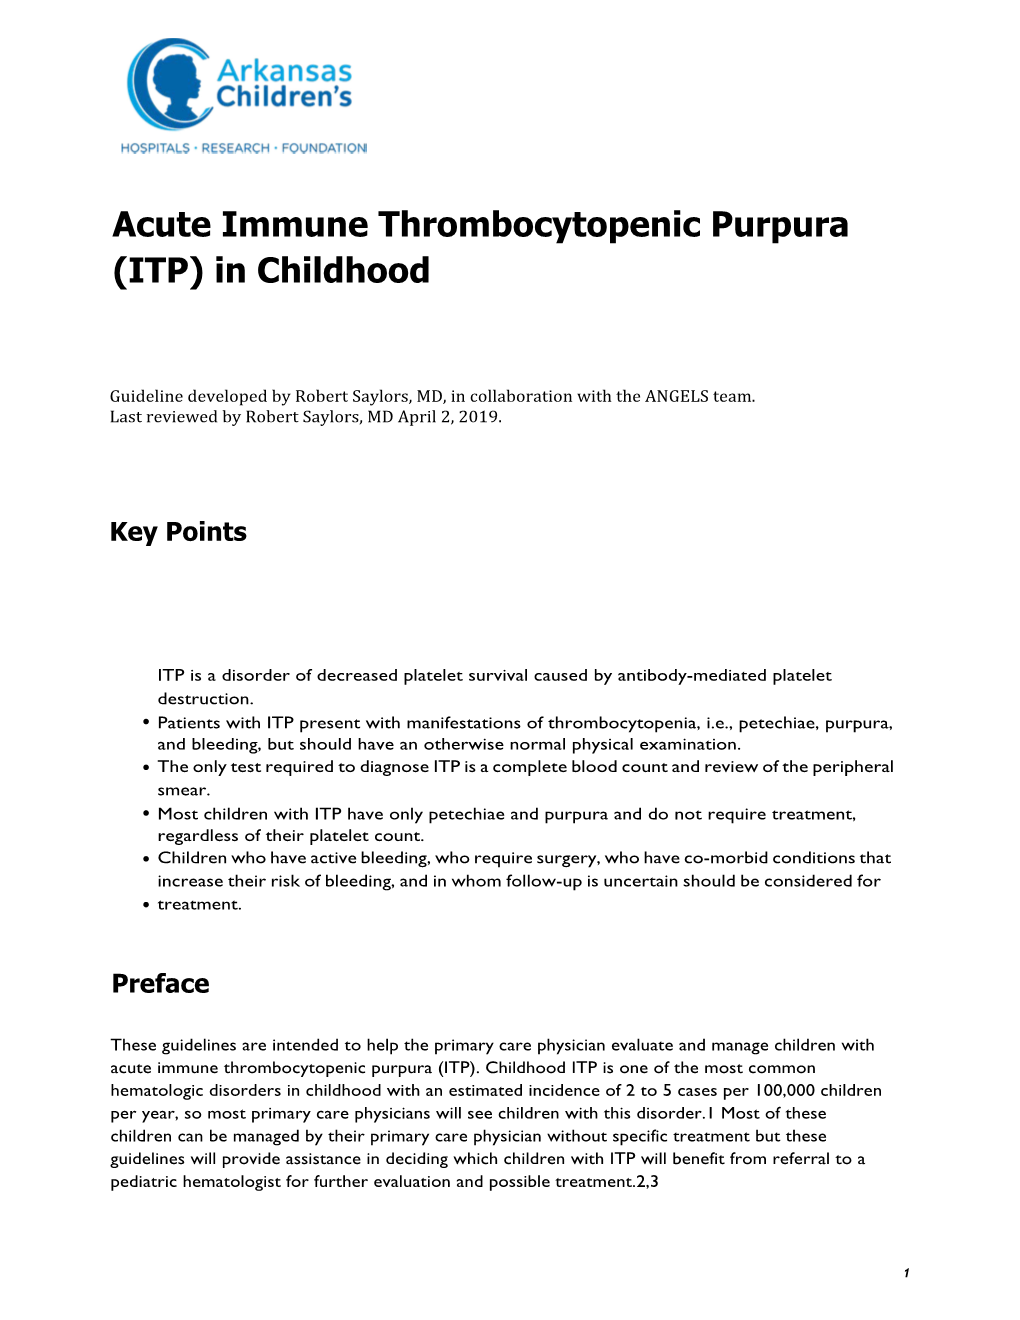 Acute Immune Thrombocytopenic Purpura (ITP) in Childhood